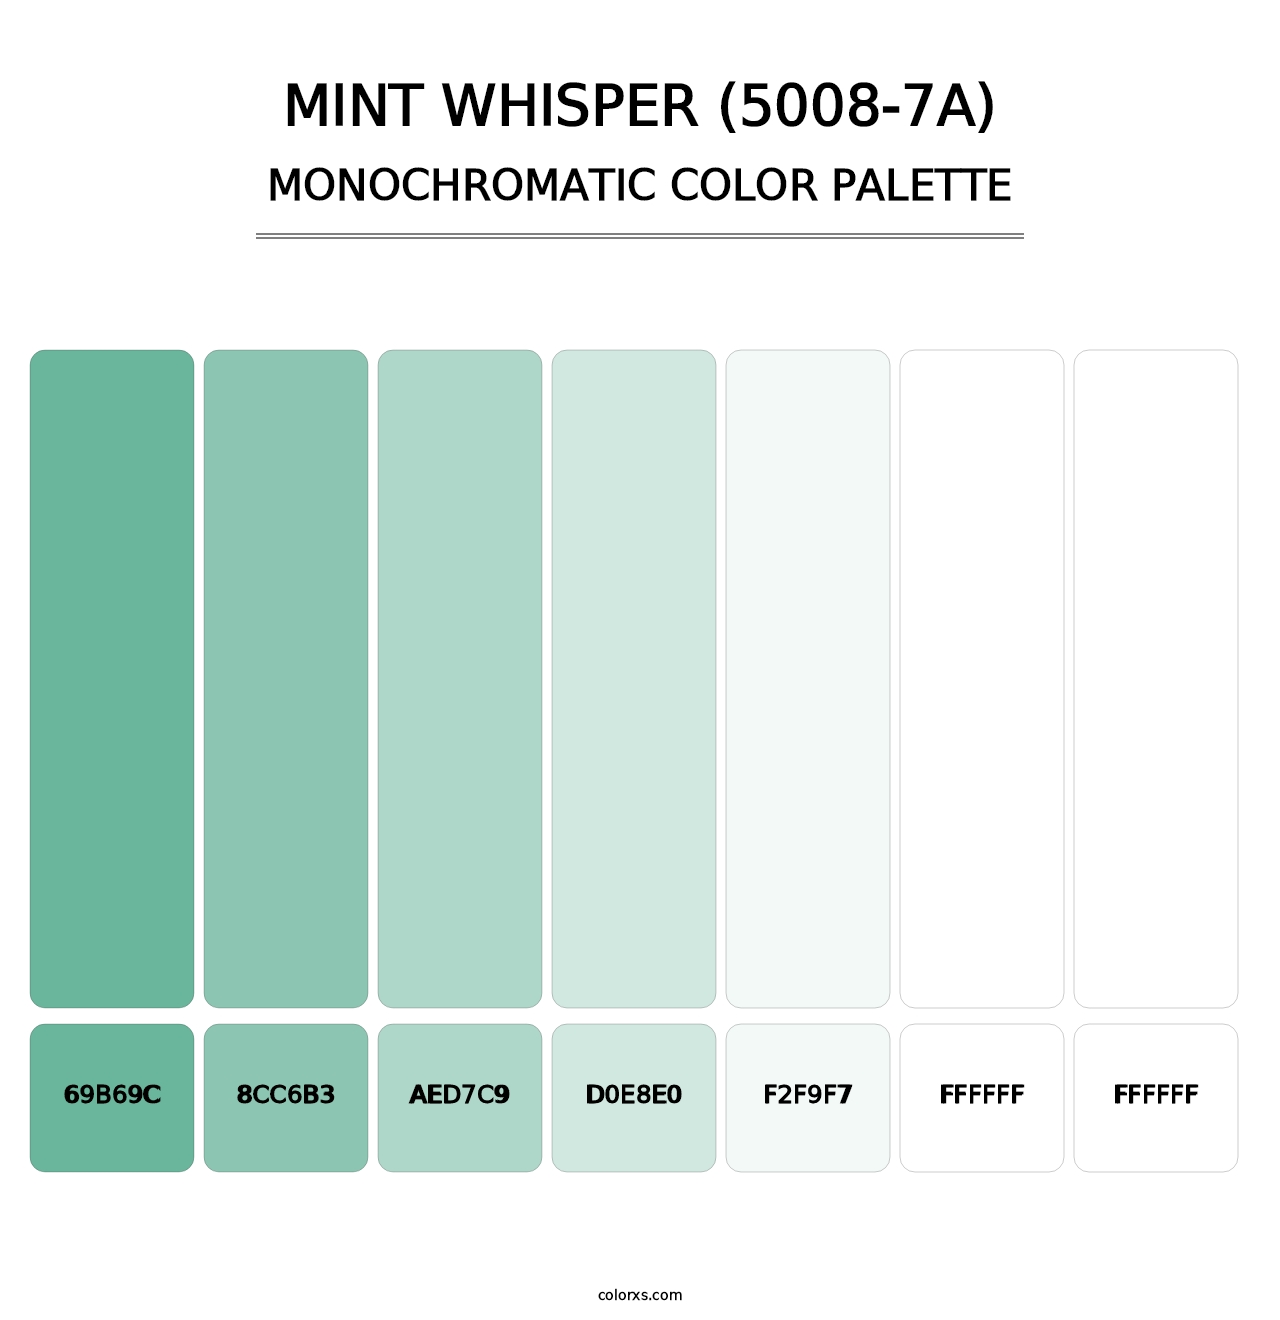 Mint Whisper (5008-7A) - Monochromatic Color Palette